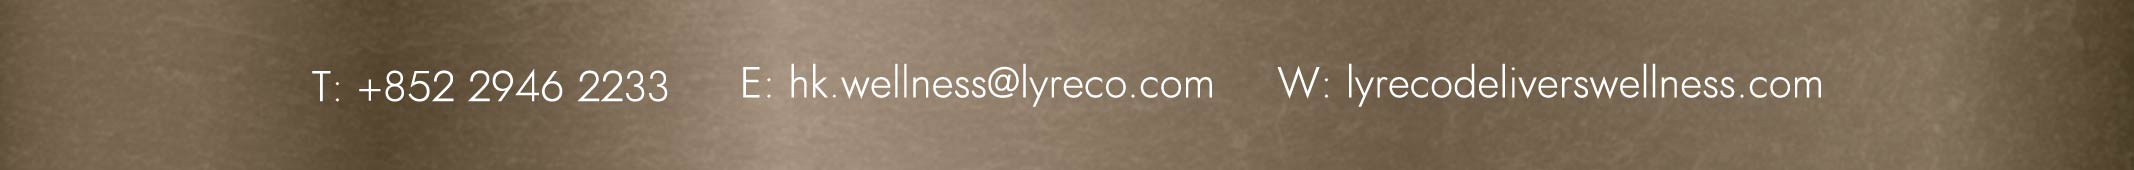 Lyreco Contact: +852 29462233 | email: hk.wellness@lyreco.com | website: lyrecodeliverswellness.com